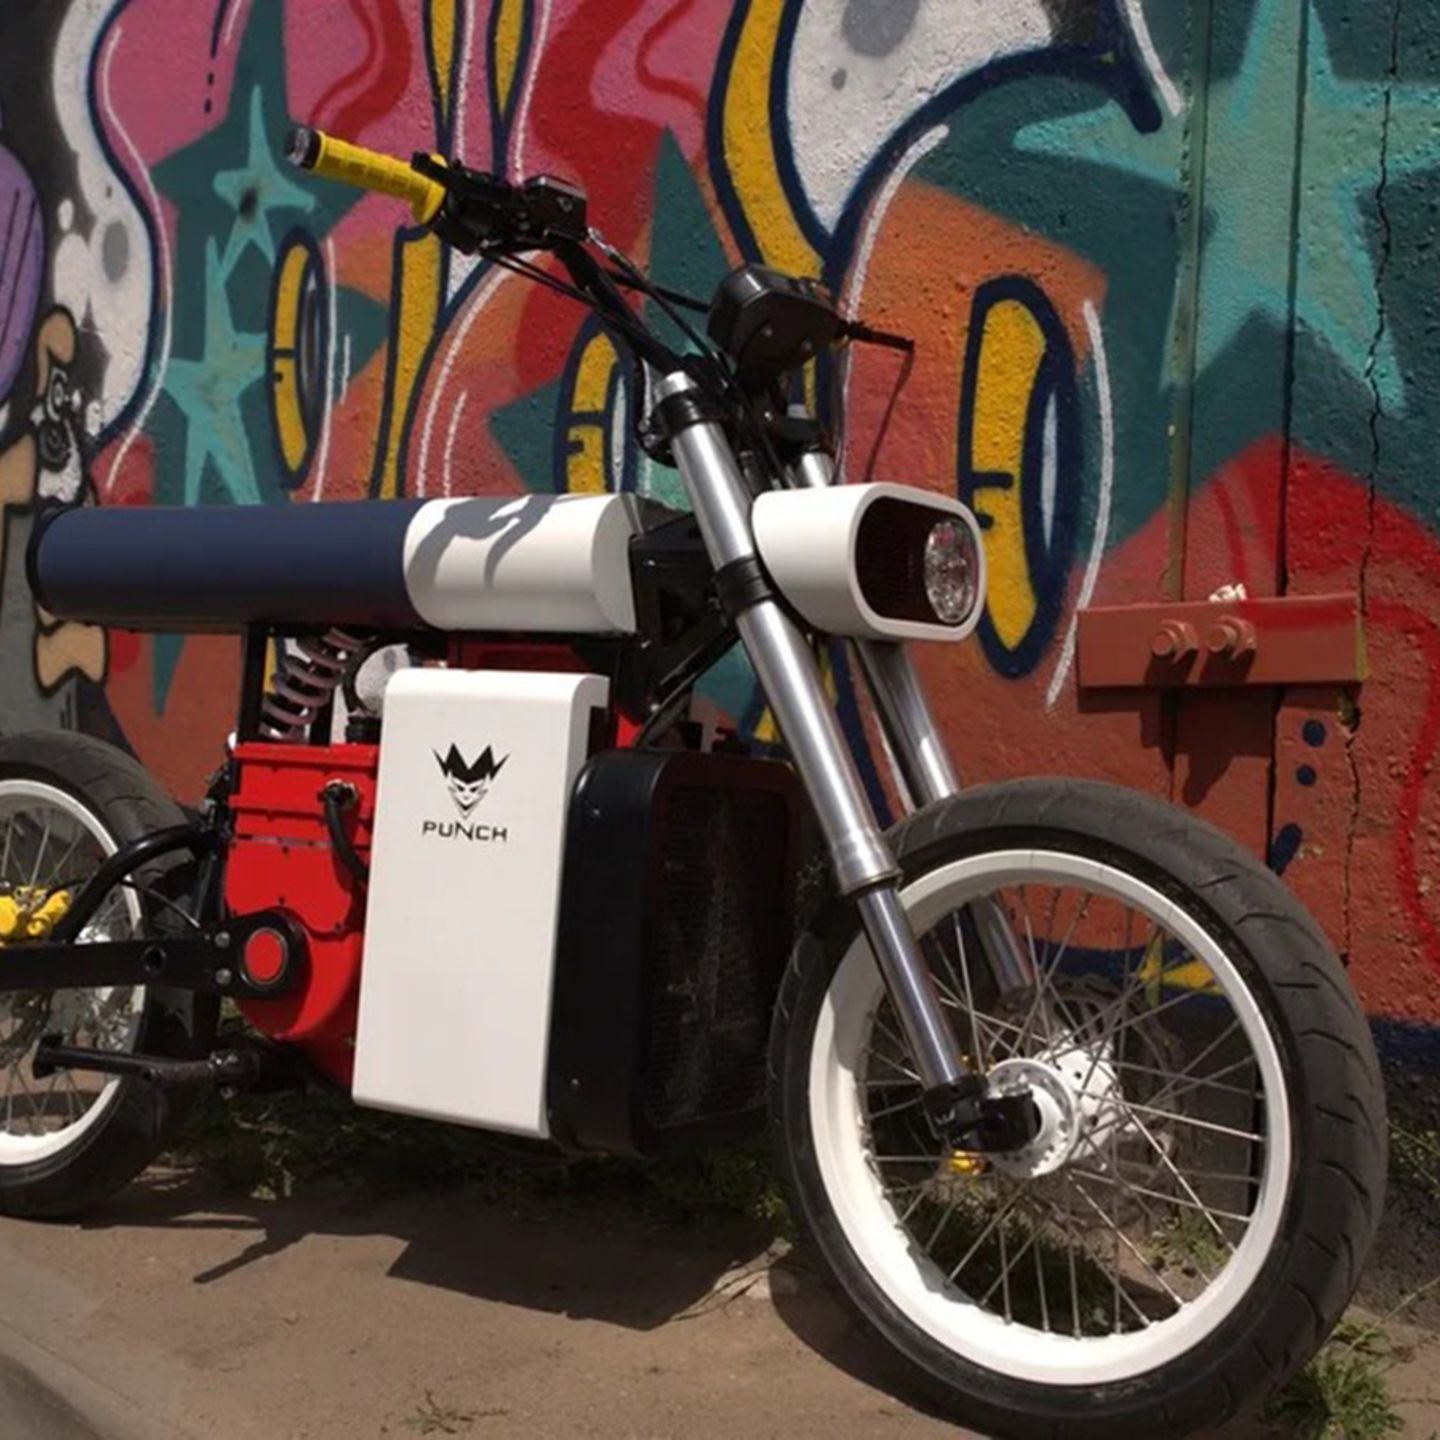 Ein echter Design-Kracher: Dieses Elektro-Motorrad leistet 220 PS